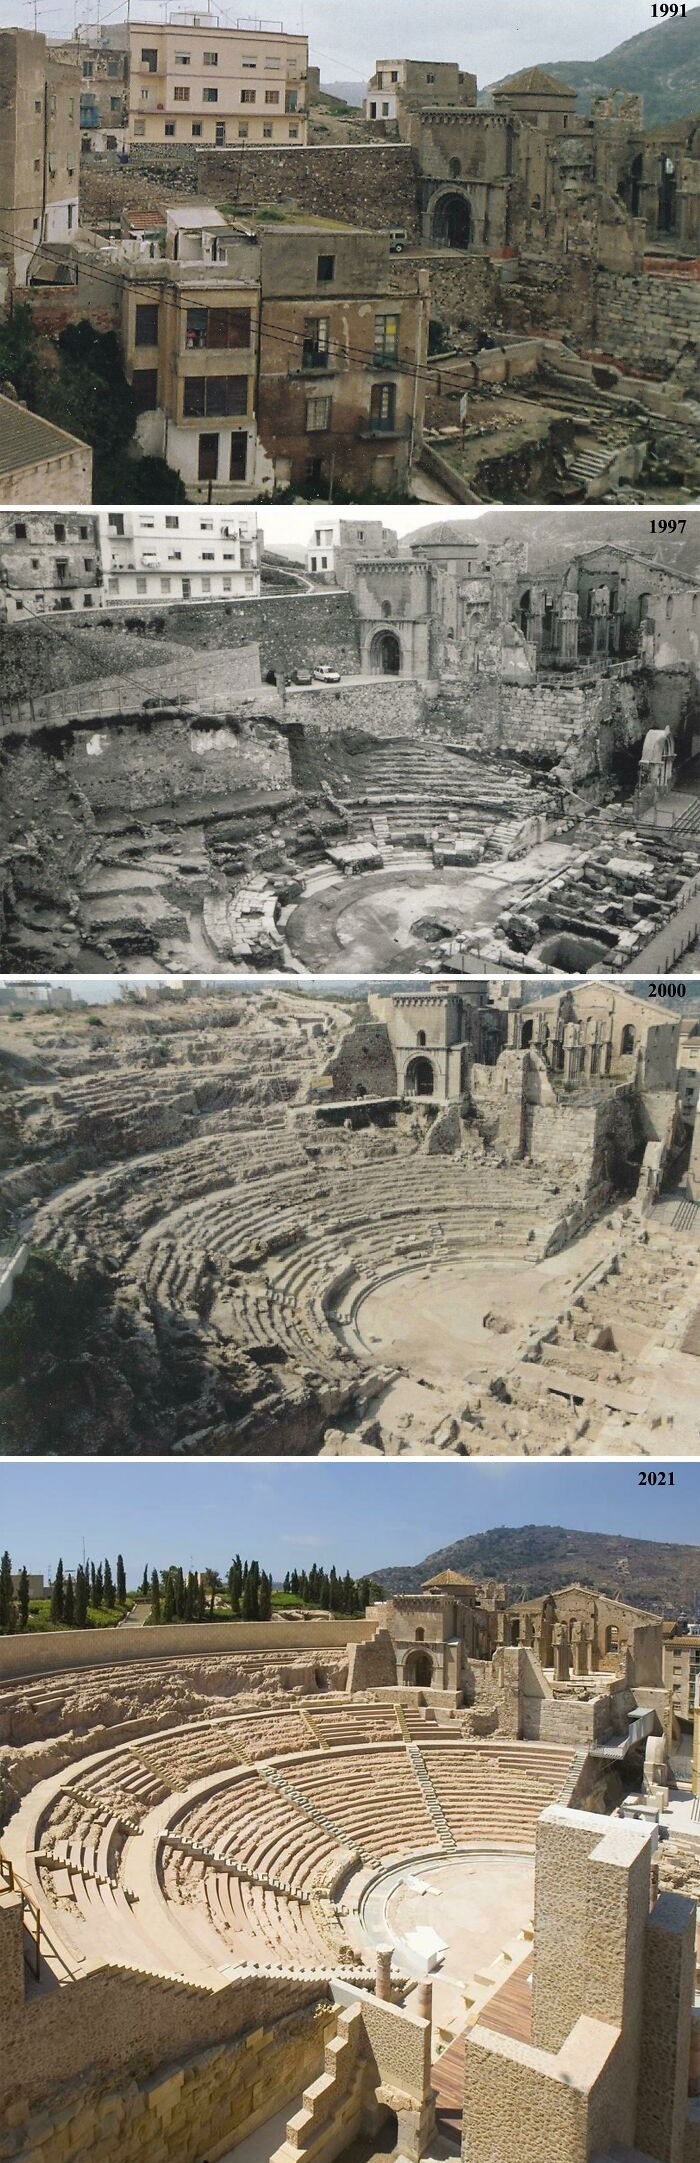 7. Rzymski teatr w Kartagenie (region Murcja, Hiszpania) 1991 vs 2021